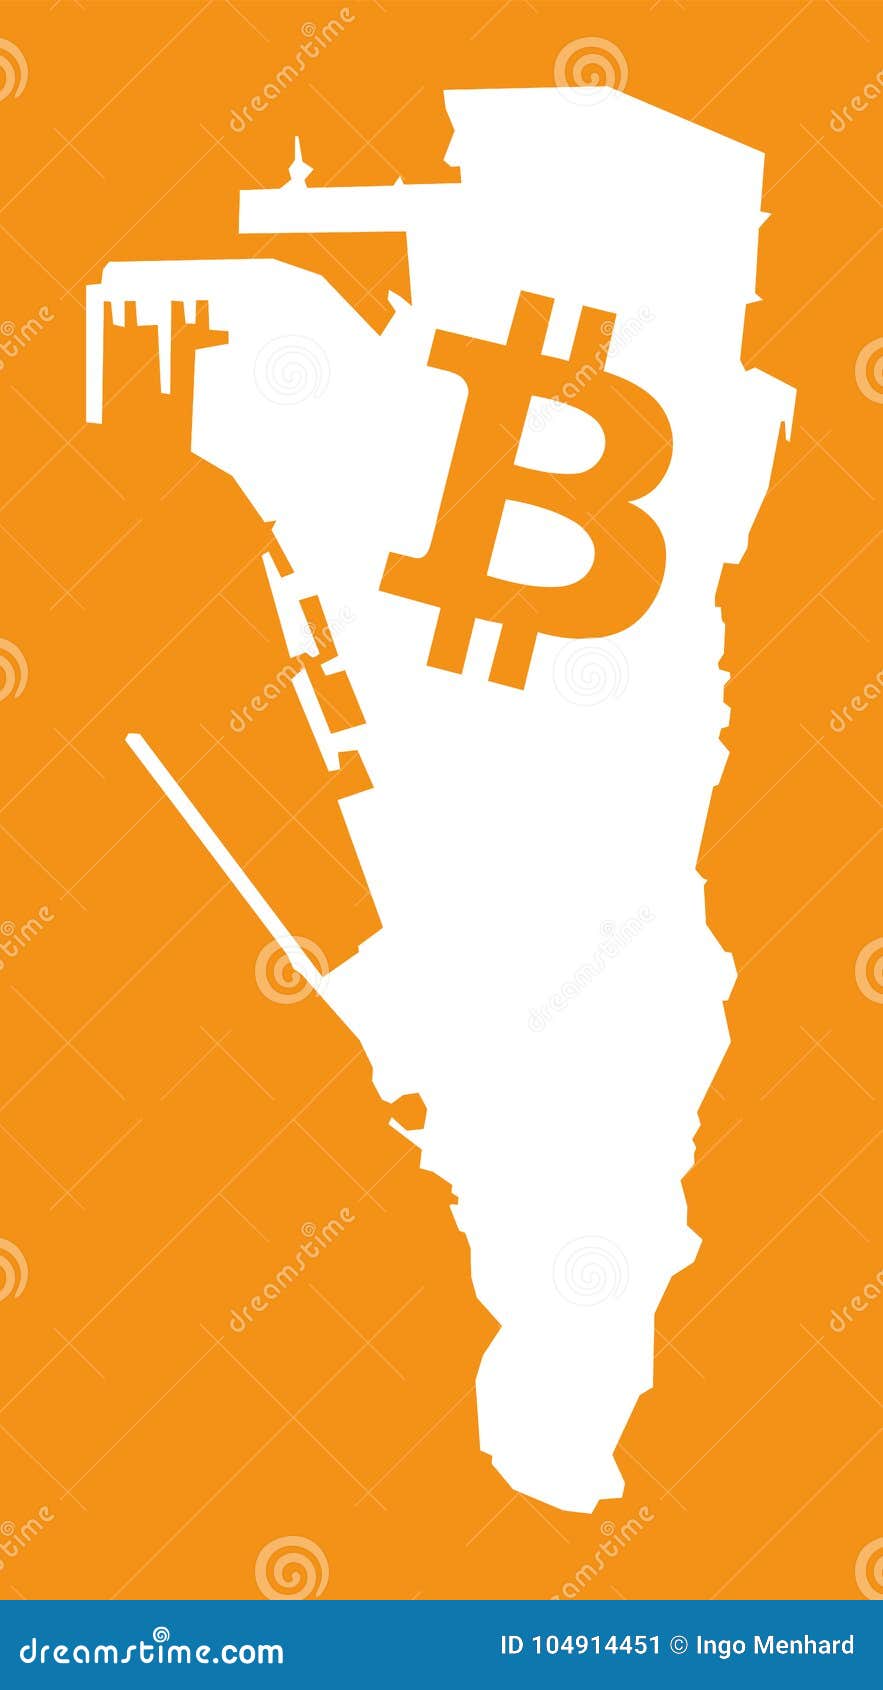 bitcoin gibraltar